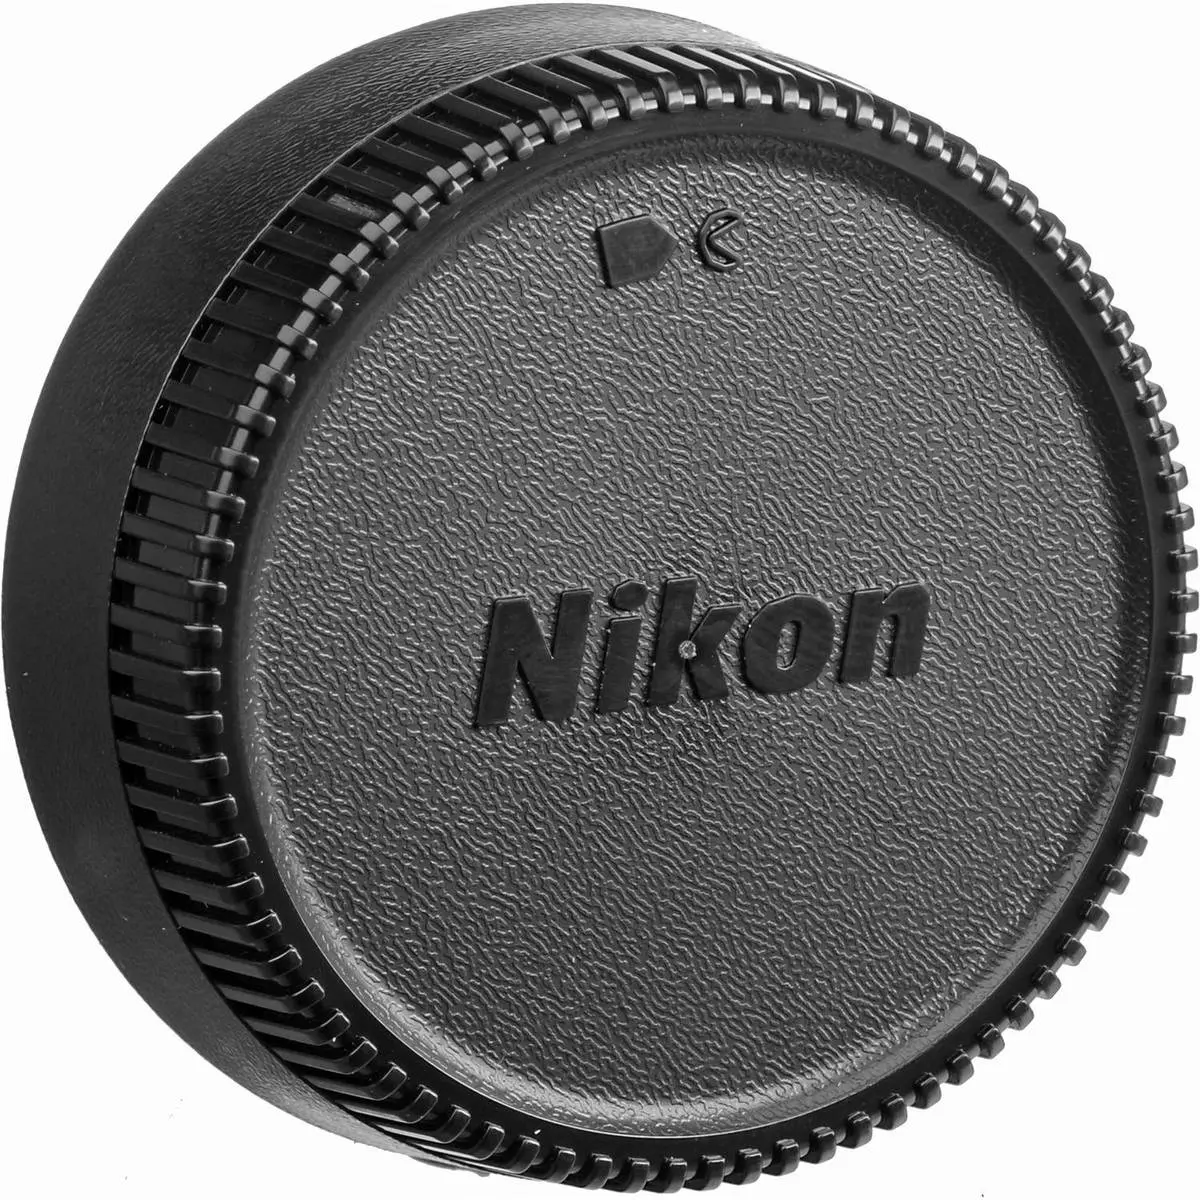 4. Nikon Nikkor AF 50mm 50 f/1.4 D F1.4 D Lens